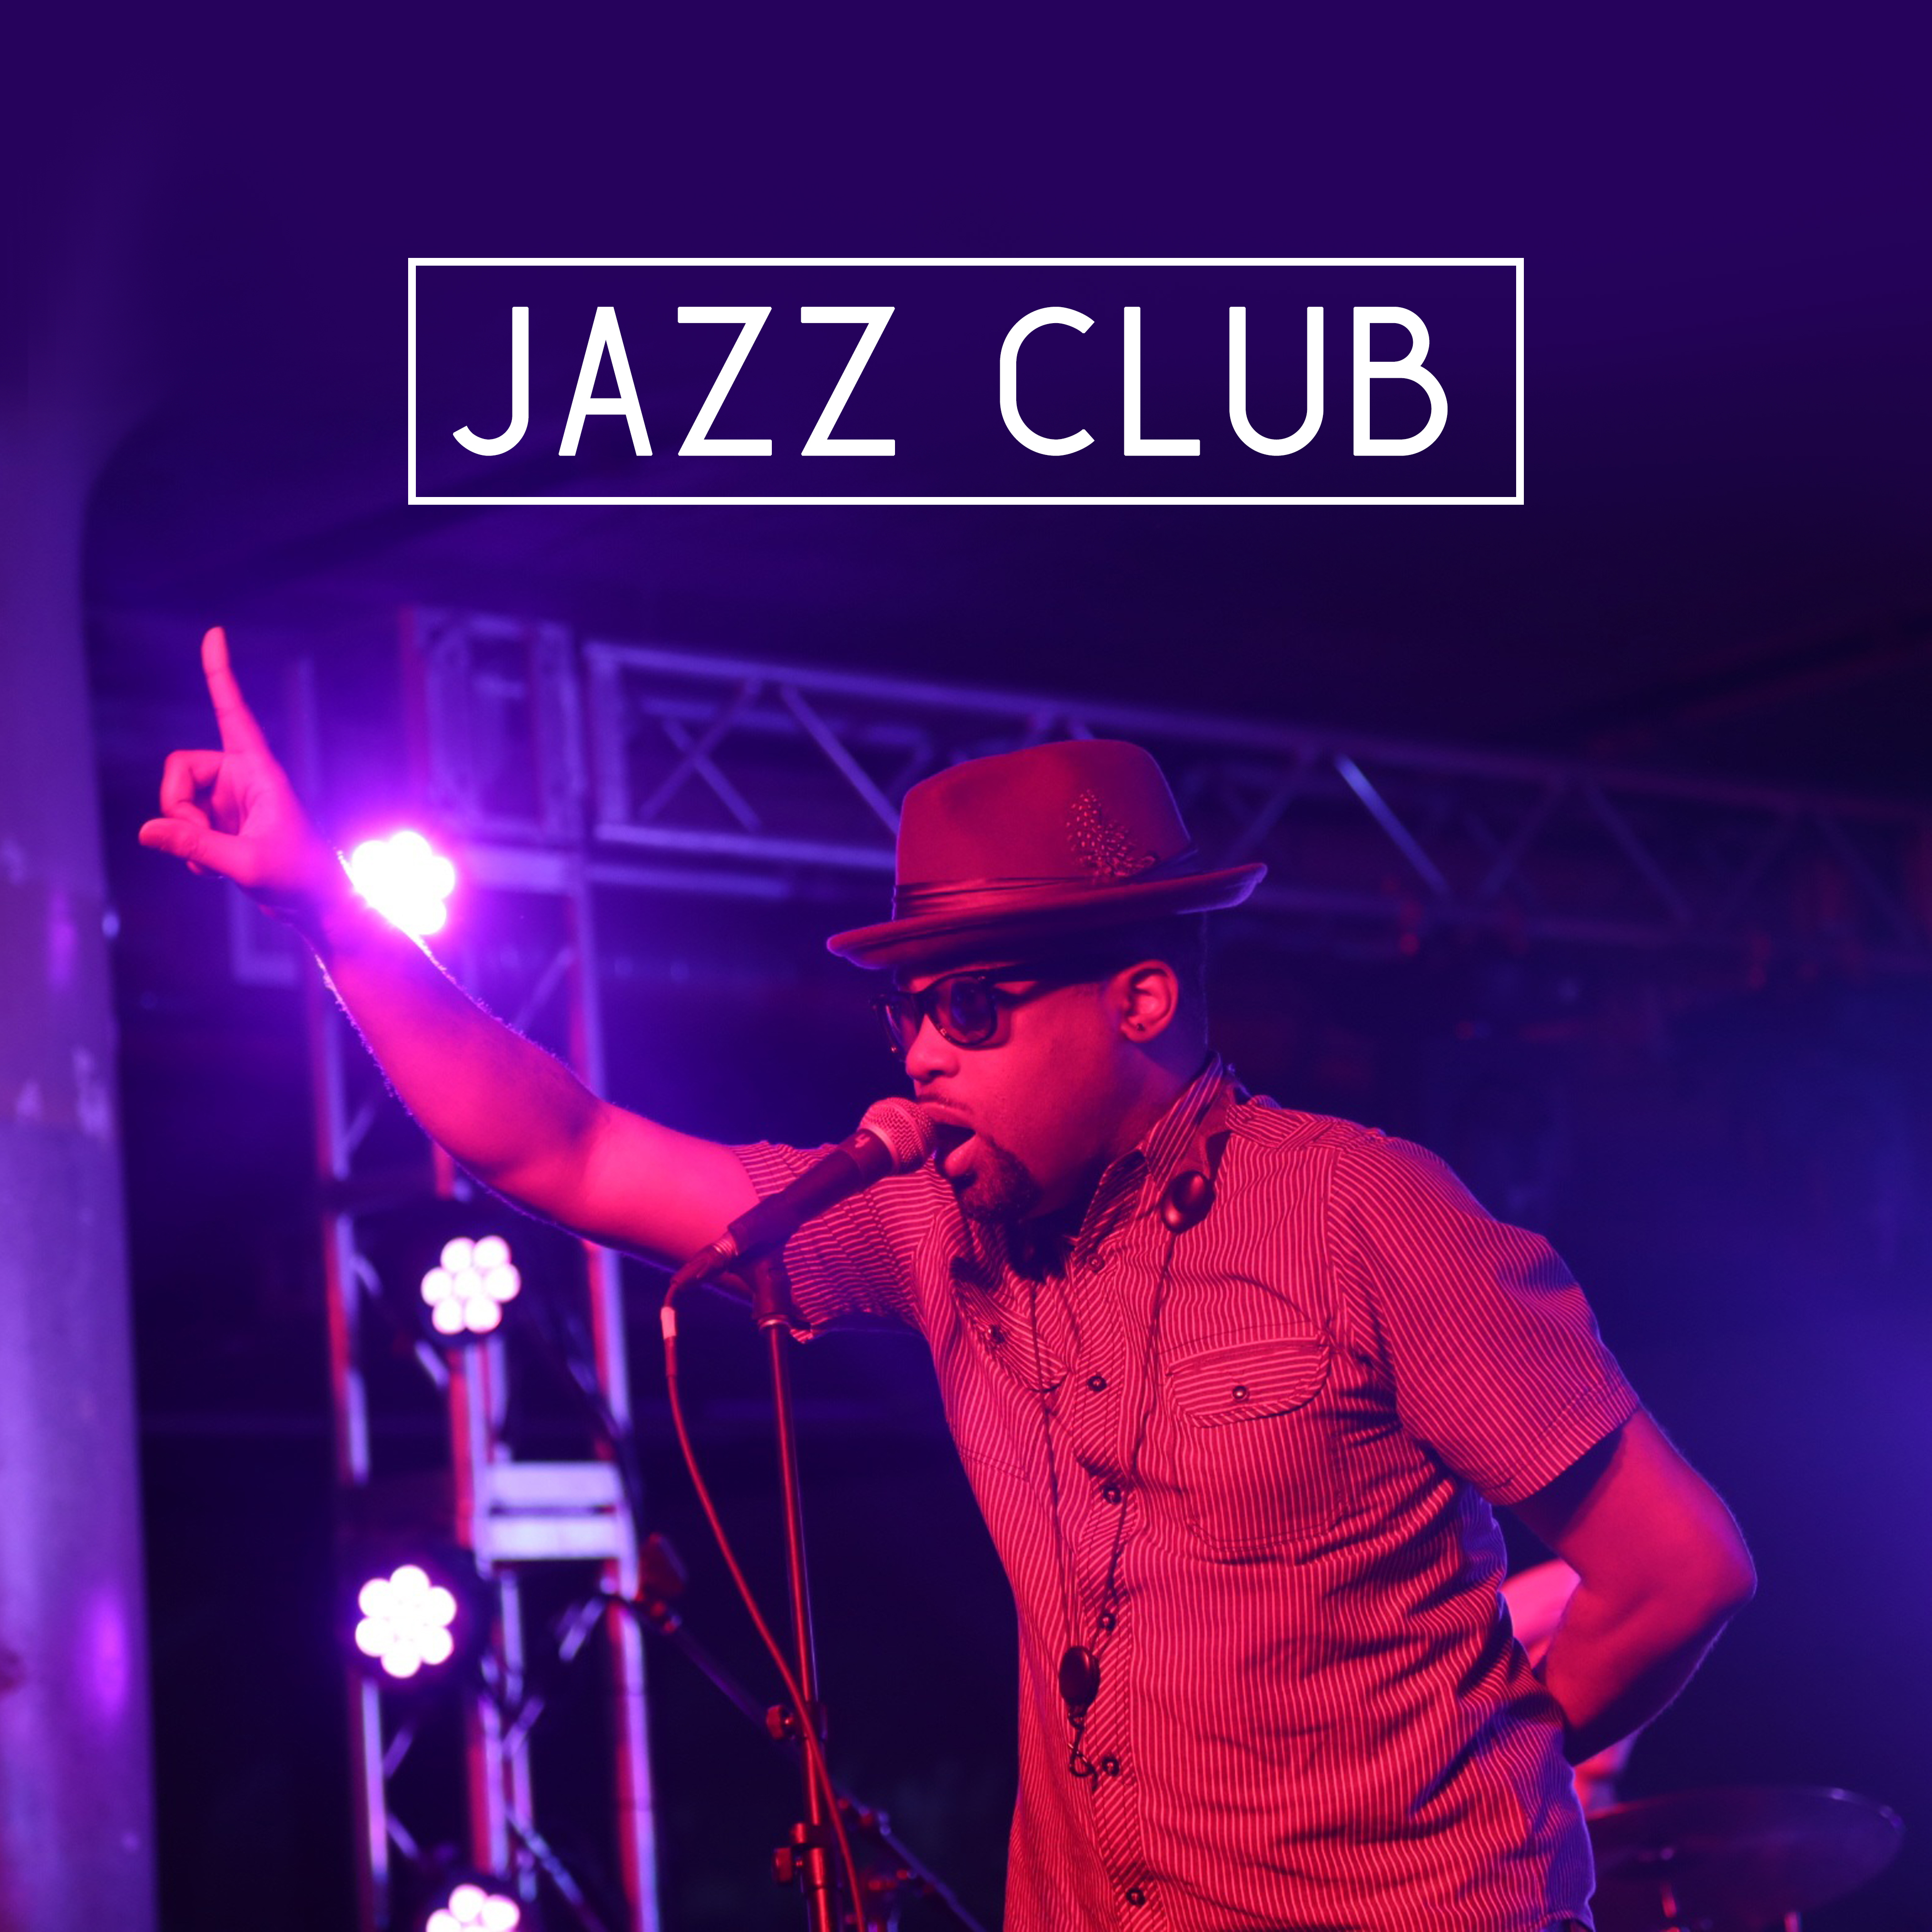 Jazz Club – Jazz for Club, Bar, Restaurant, Cafe, Most Sounds of Instrumental